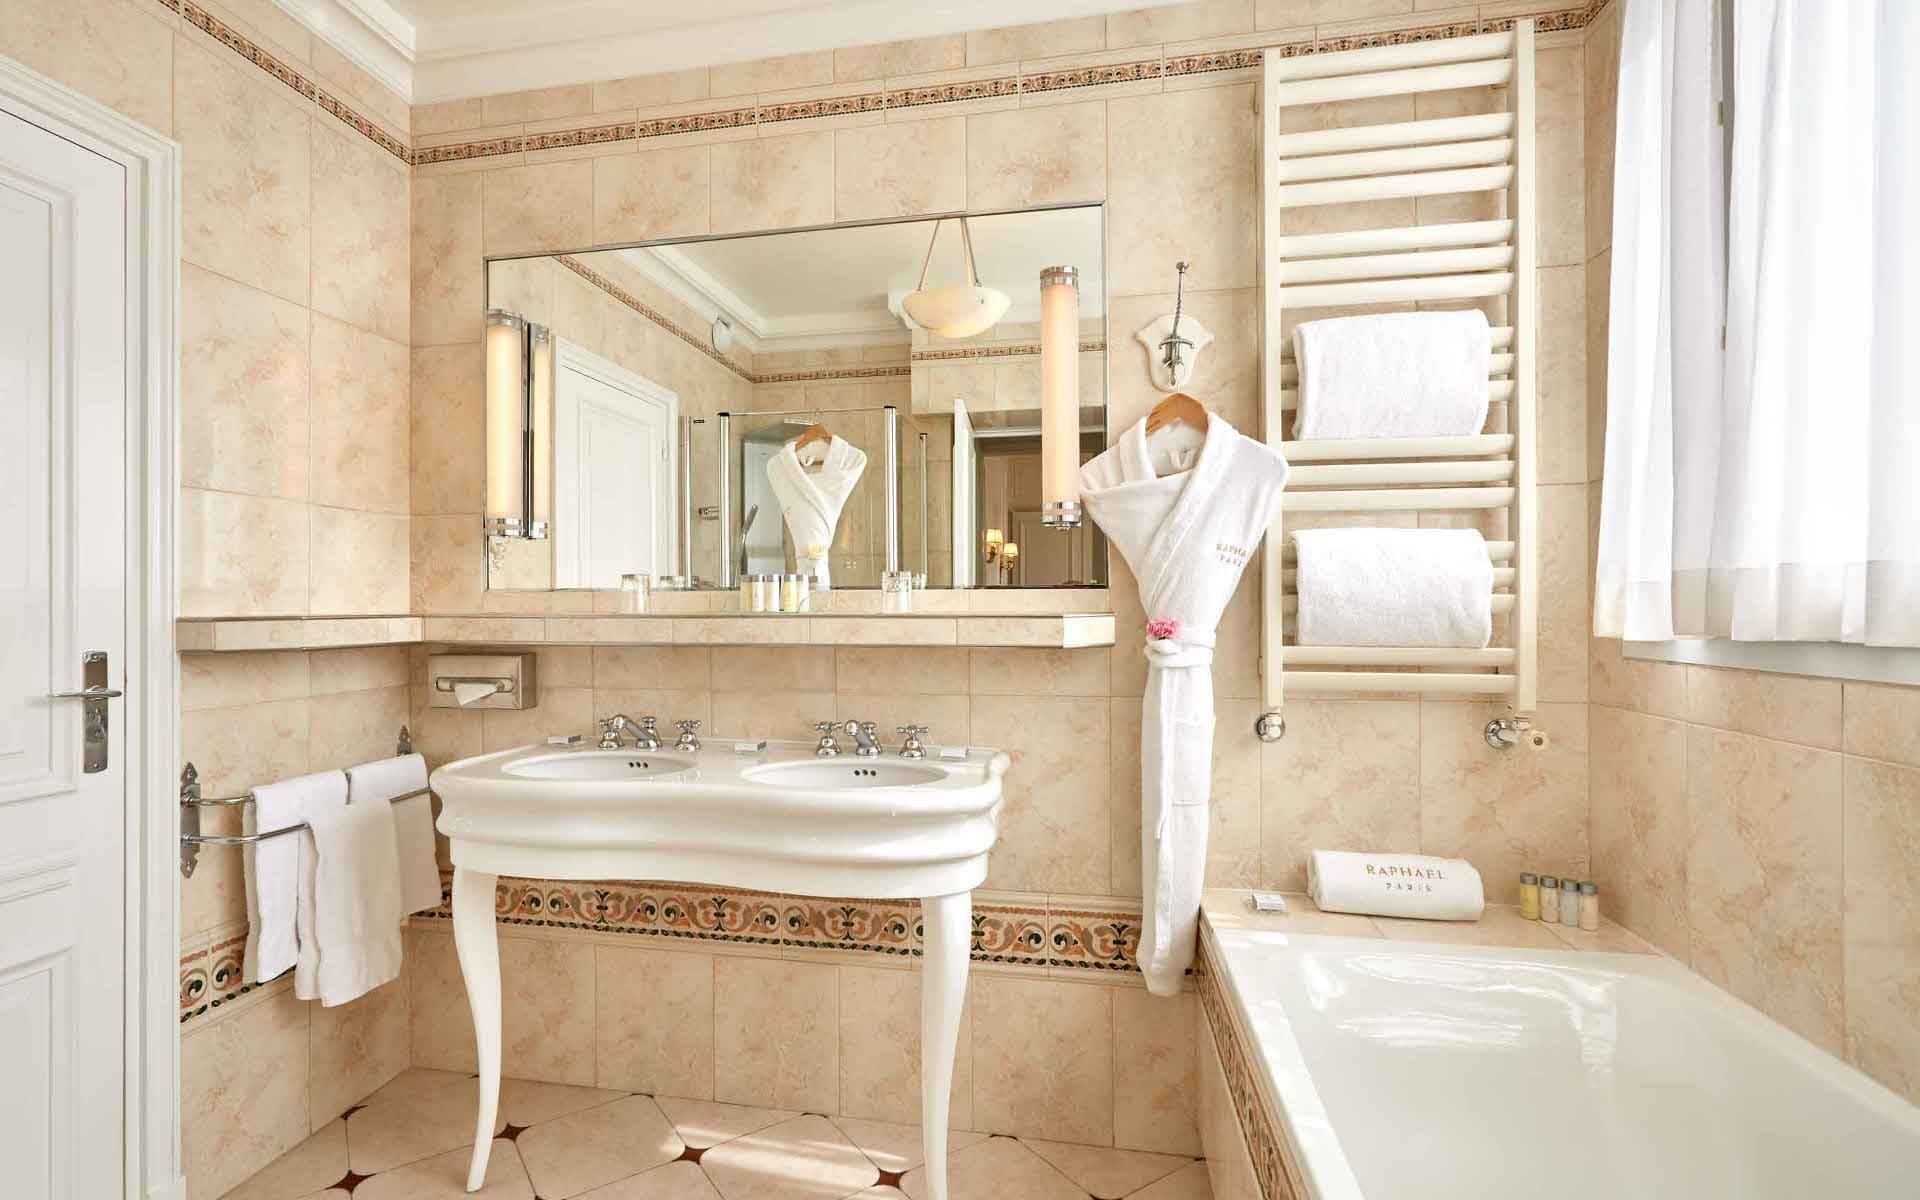 266/5-Suites/suite-terrasse-tour-eiffel/Suite Tour Eiffel Bathroom -  Hotel Raphael Paris.jpg